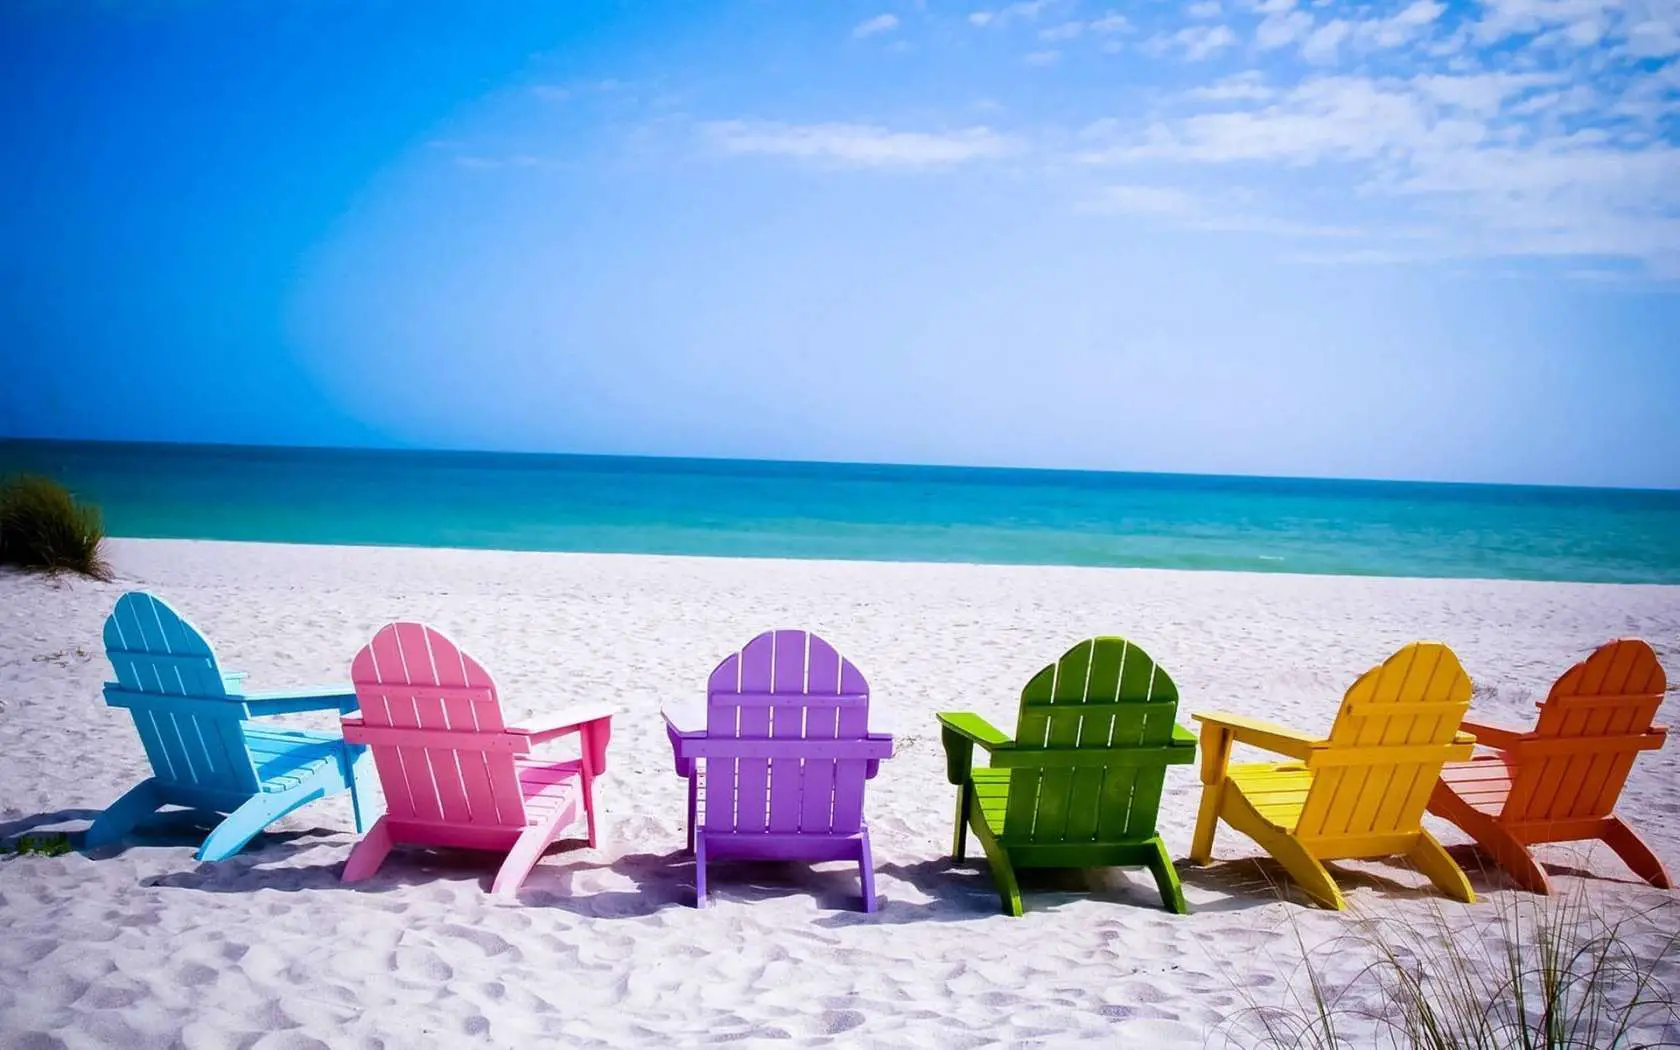 Papel de parede de praia gratuito com cadeiras coloridas em uma praia de areia branca